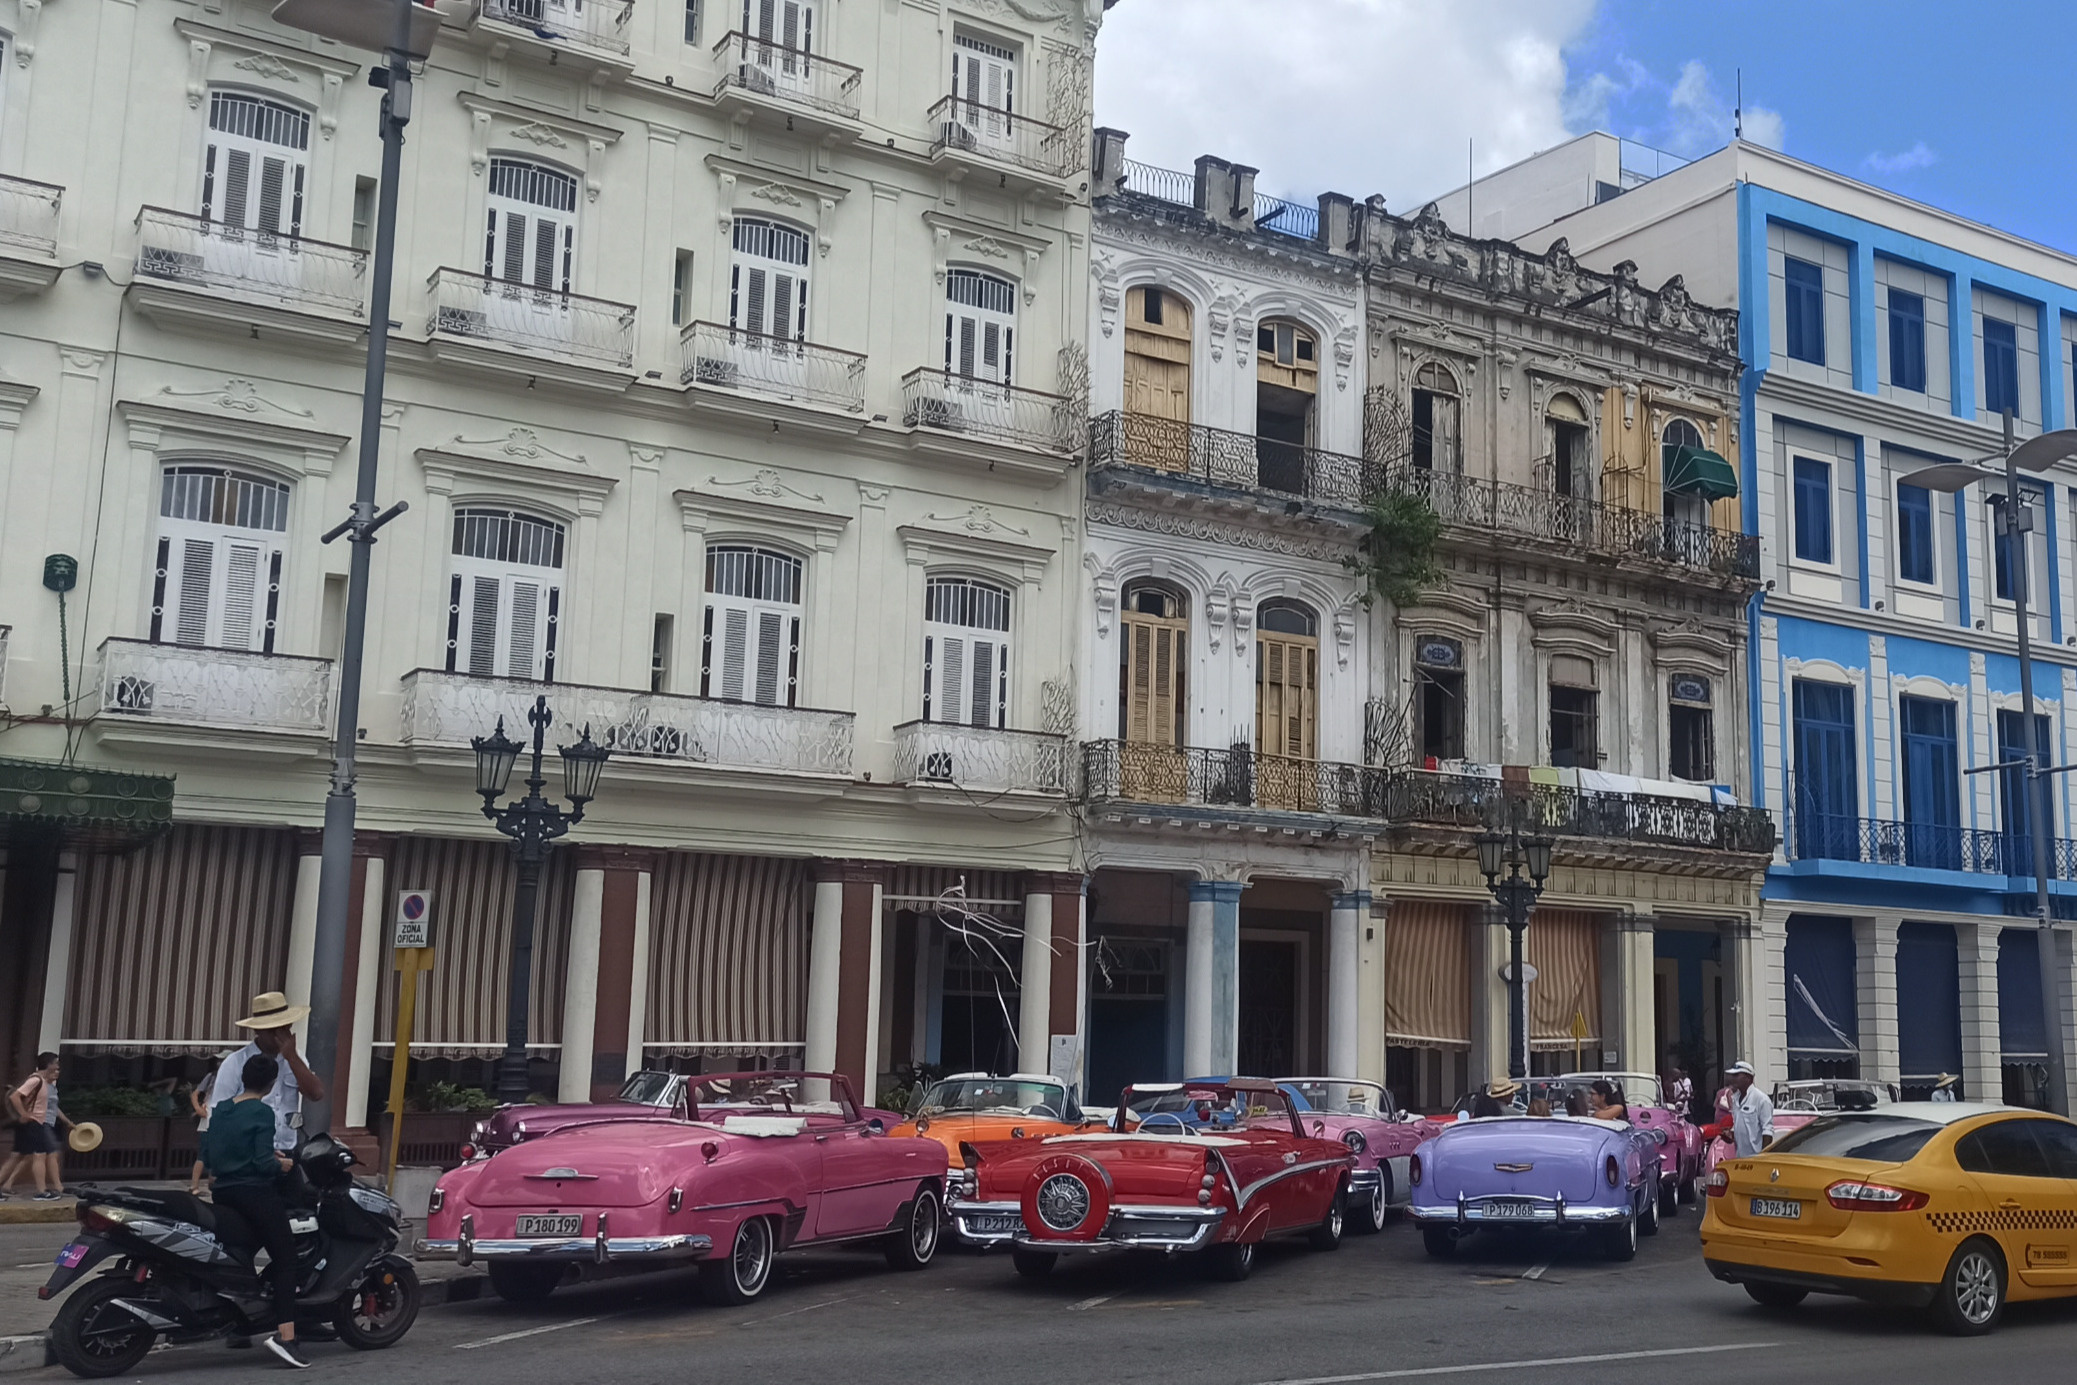 В Кубу приезжают туристы, но сталкиваются с разными неудобствами — например, медленный интернет